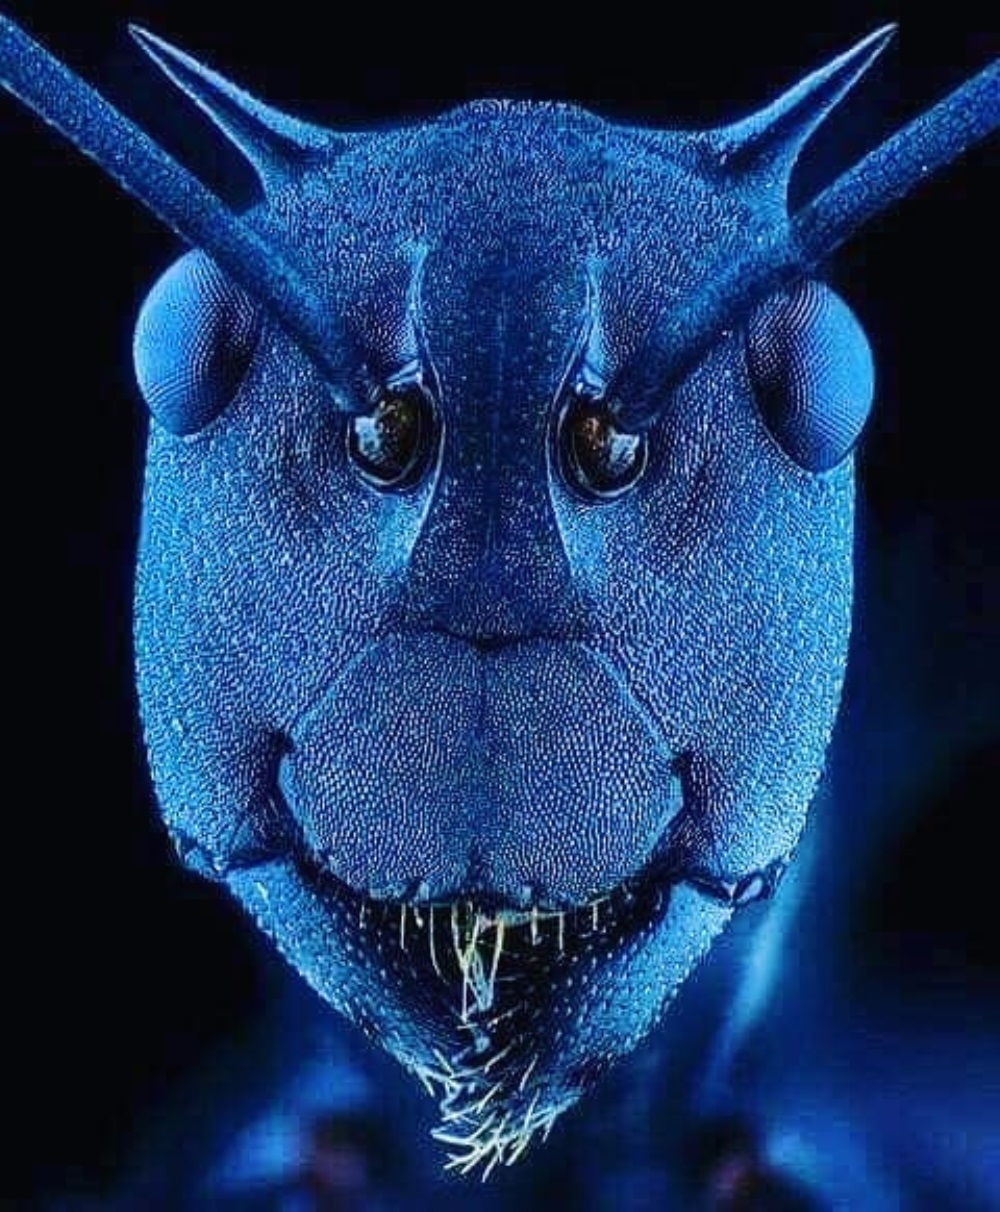 Una hormiga normal, como nunca antes la habíamos visto